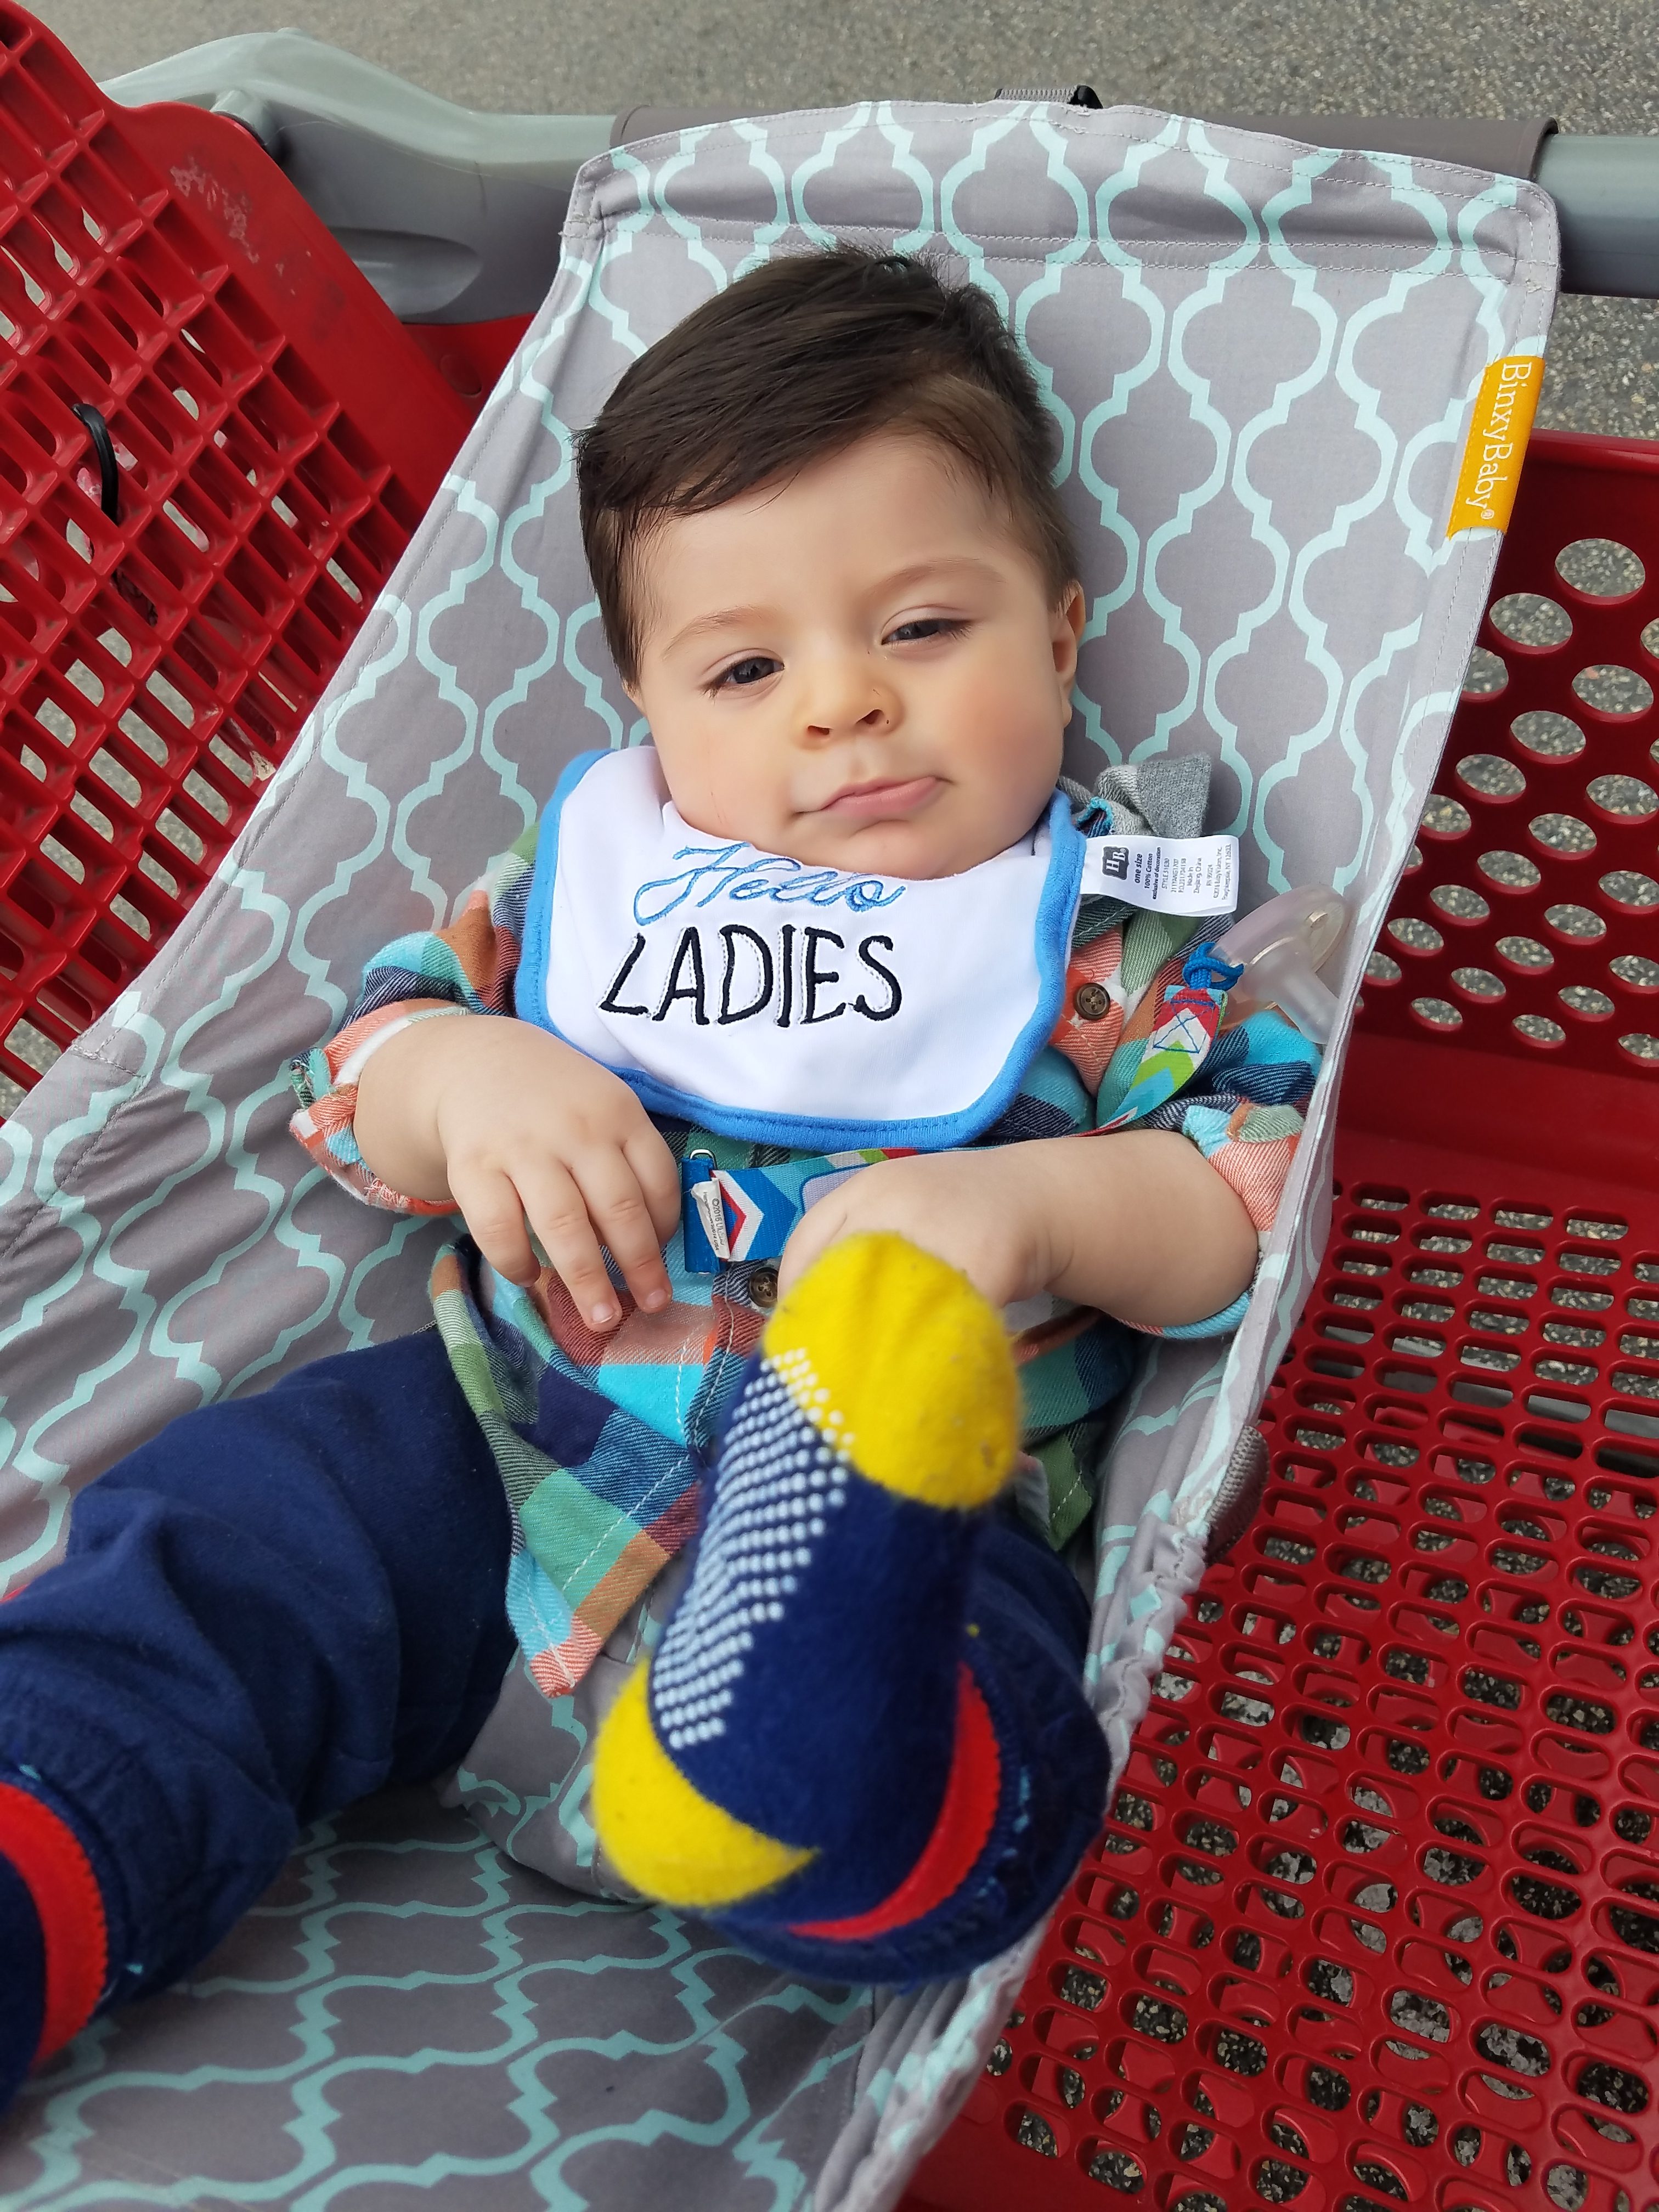 binxy baby shopping cart